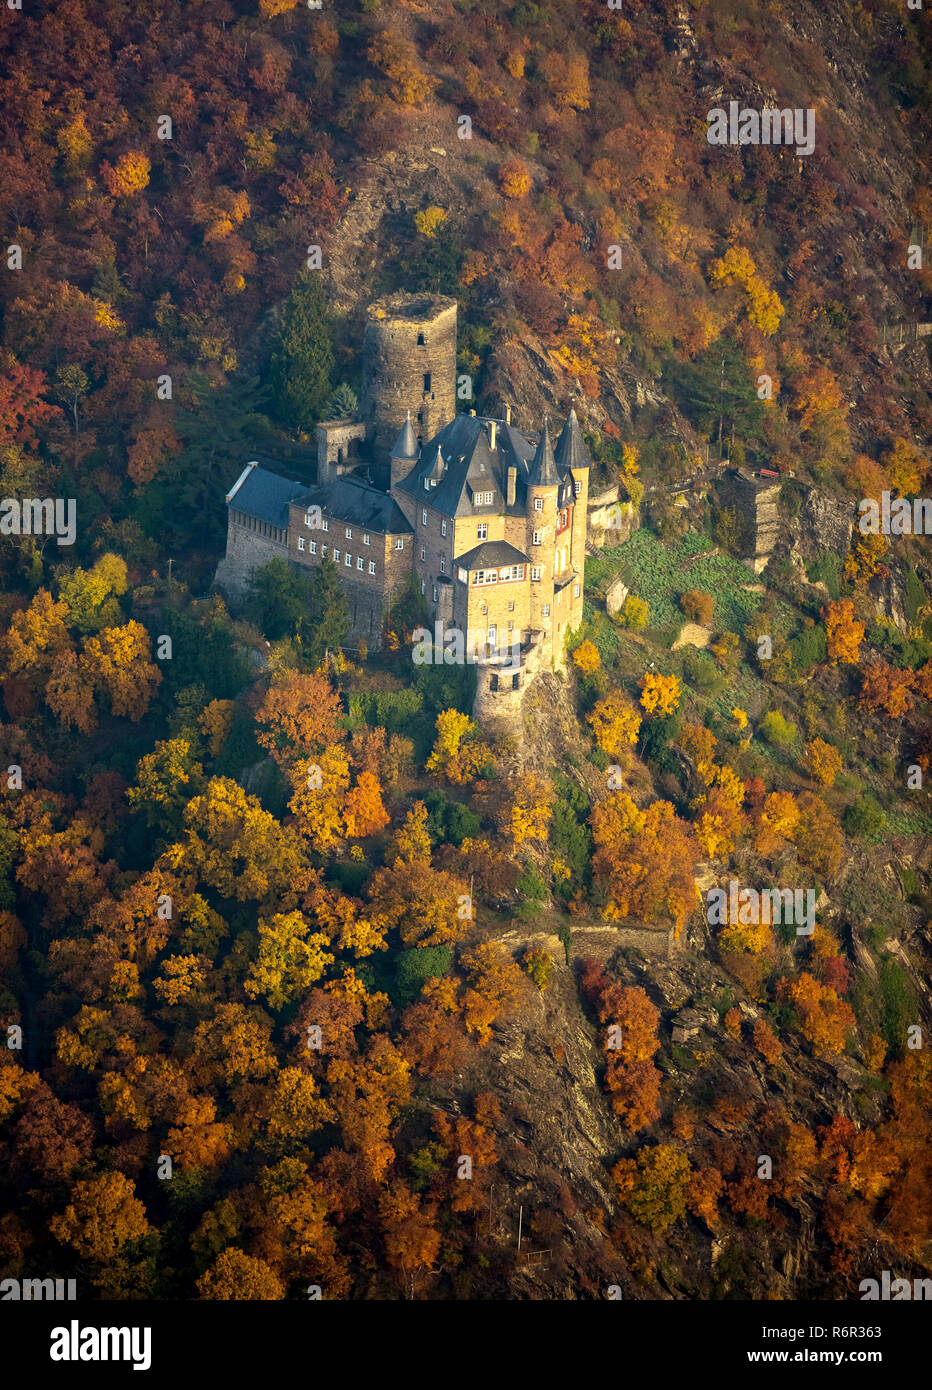 Burg Katz im Rheintal, Rhein bei St.Goarshausen Sankt Goar, Rheintal, Renania-Palatinato, Deutschland Foto Stock